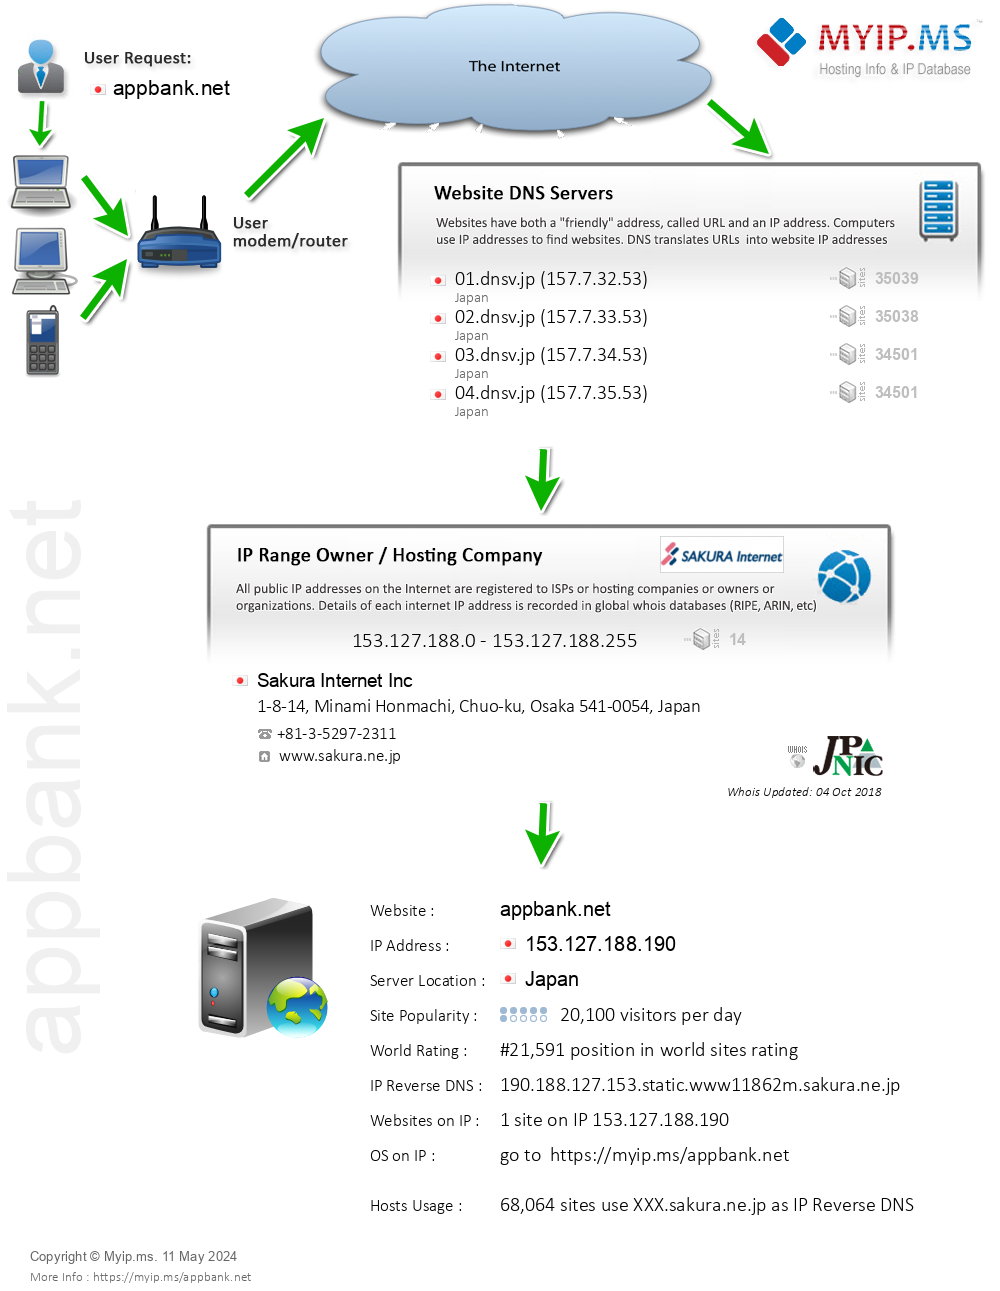 Appbank.net - Website Hosting Visual IP Diagram